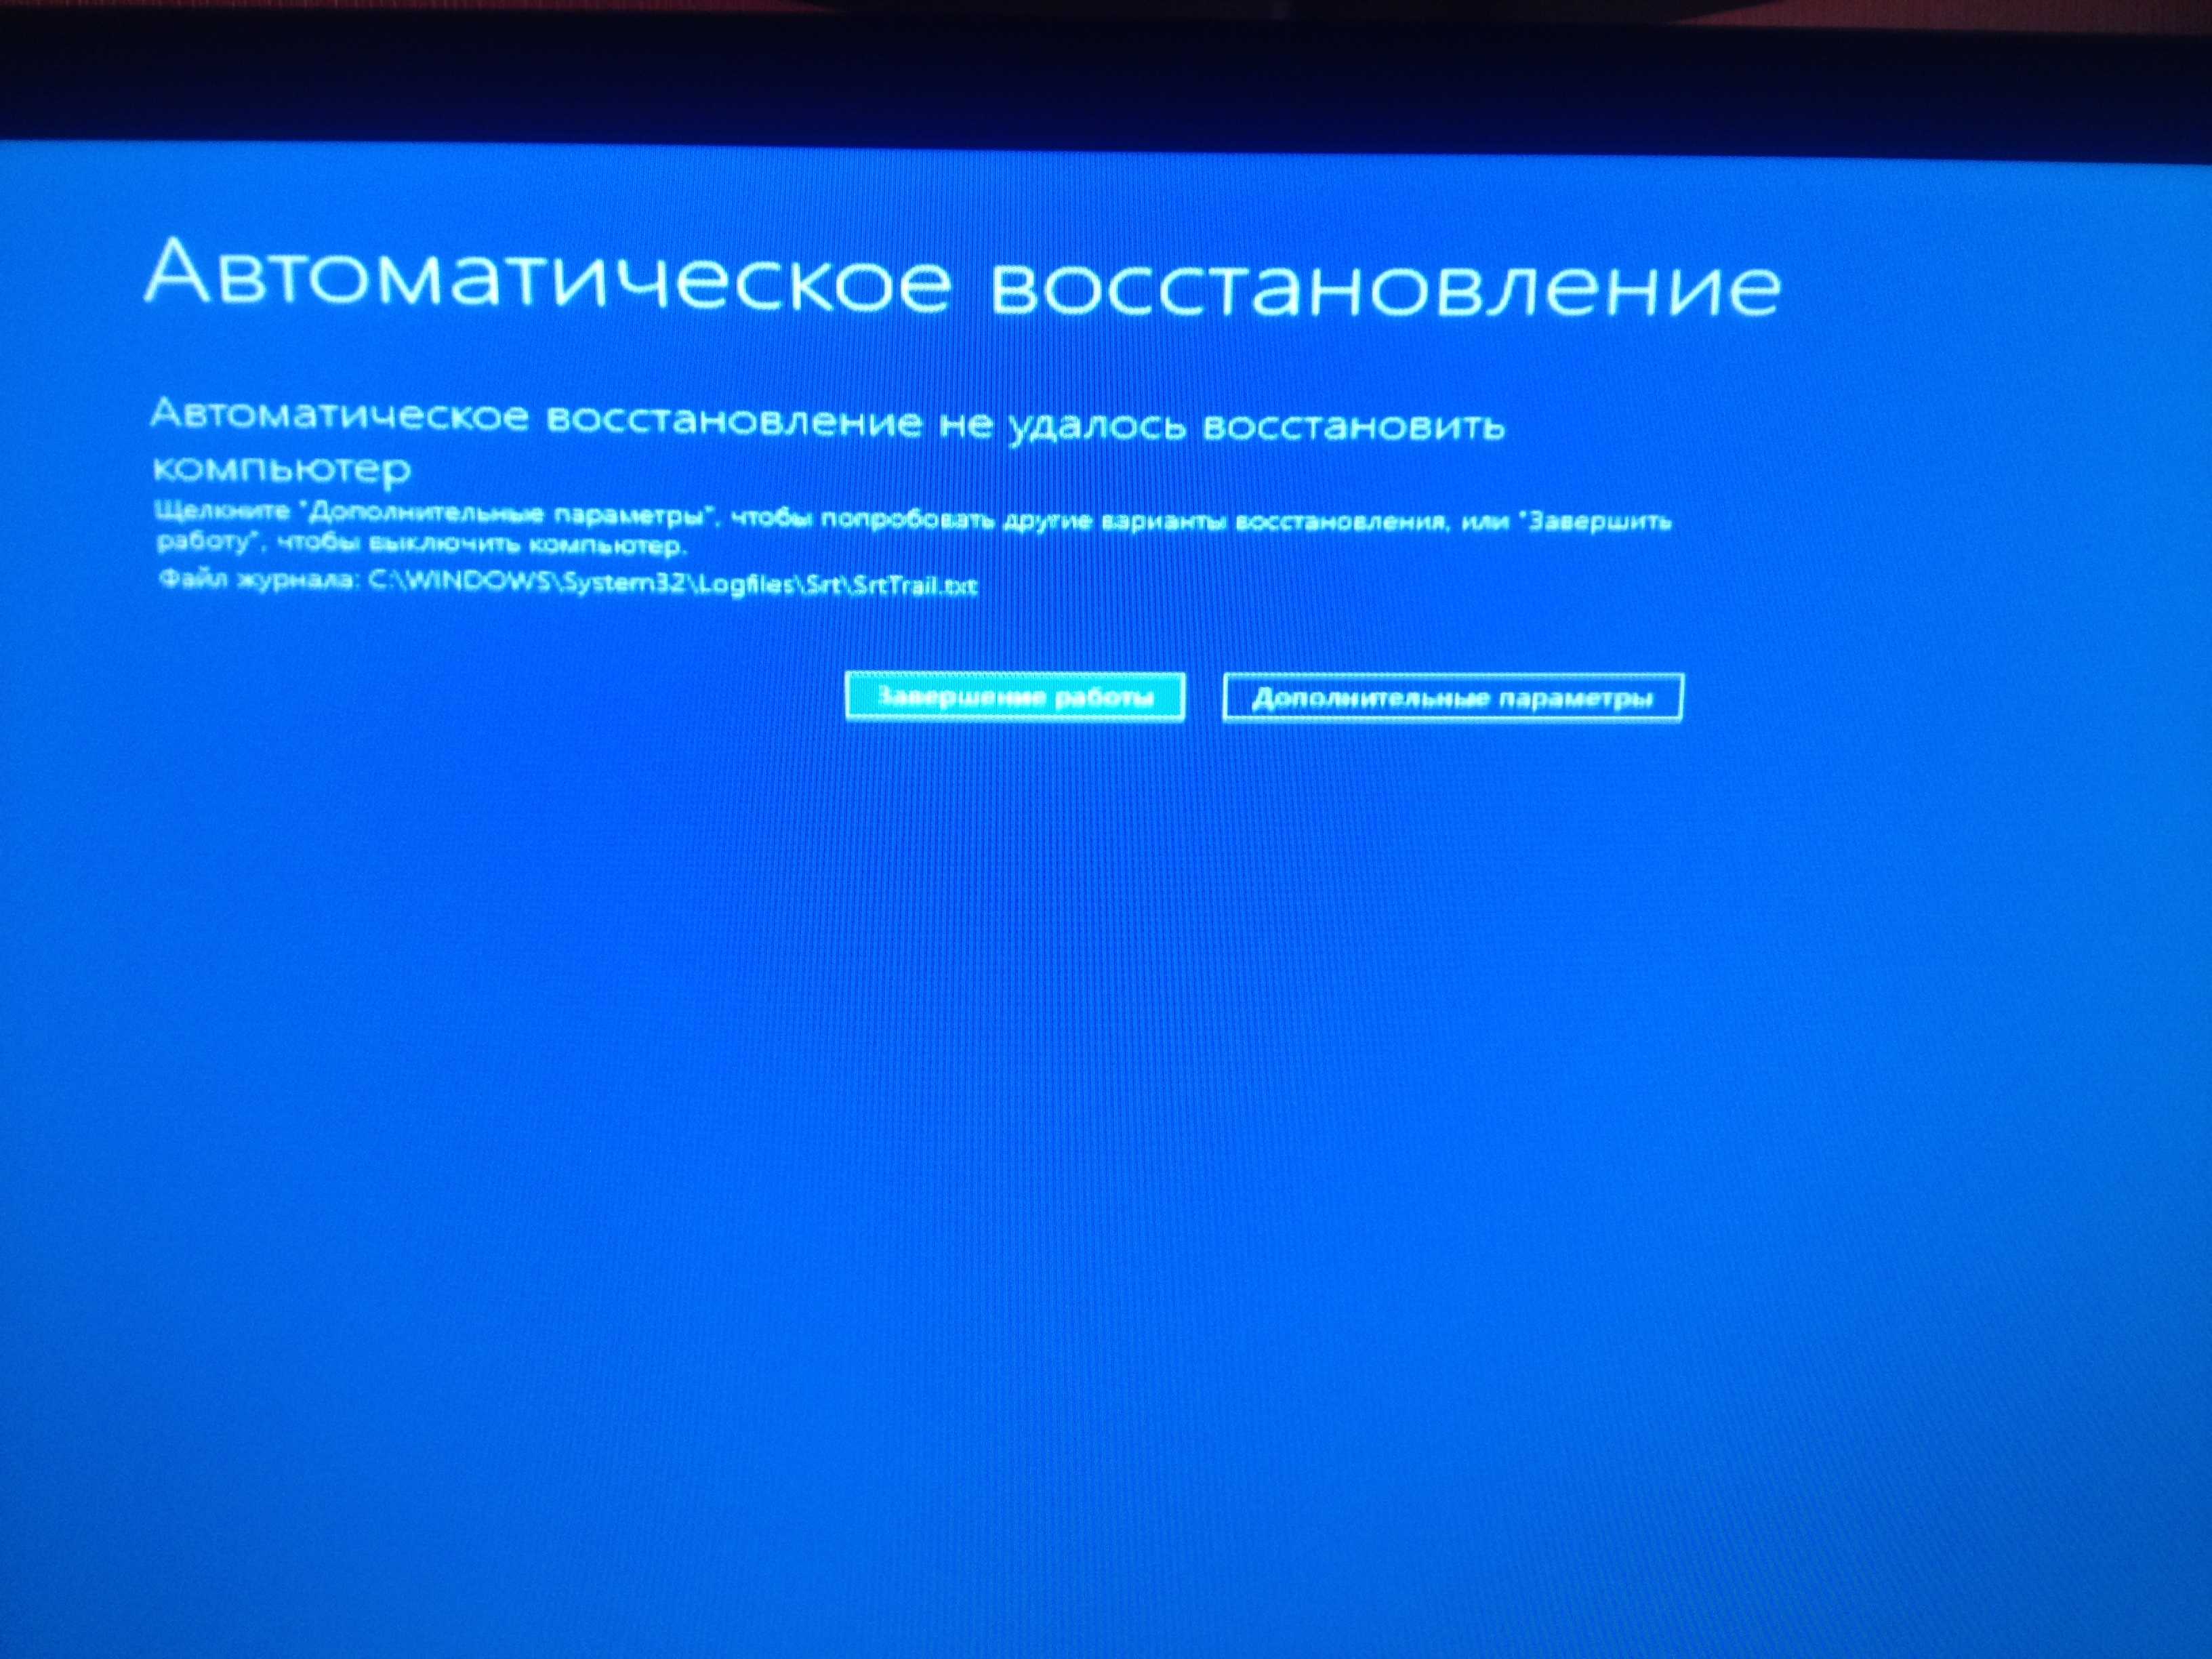 Подготовка автоматического восстановления windows 10: что делать, если компьютер запущен некорректно